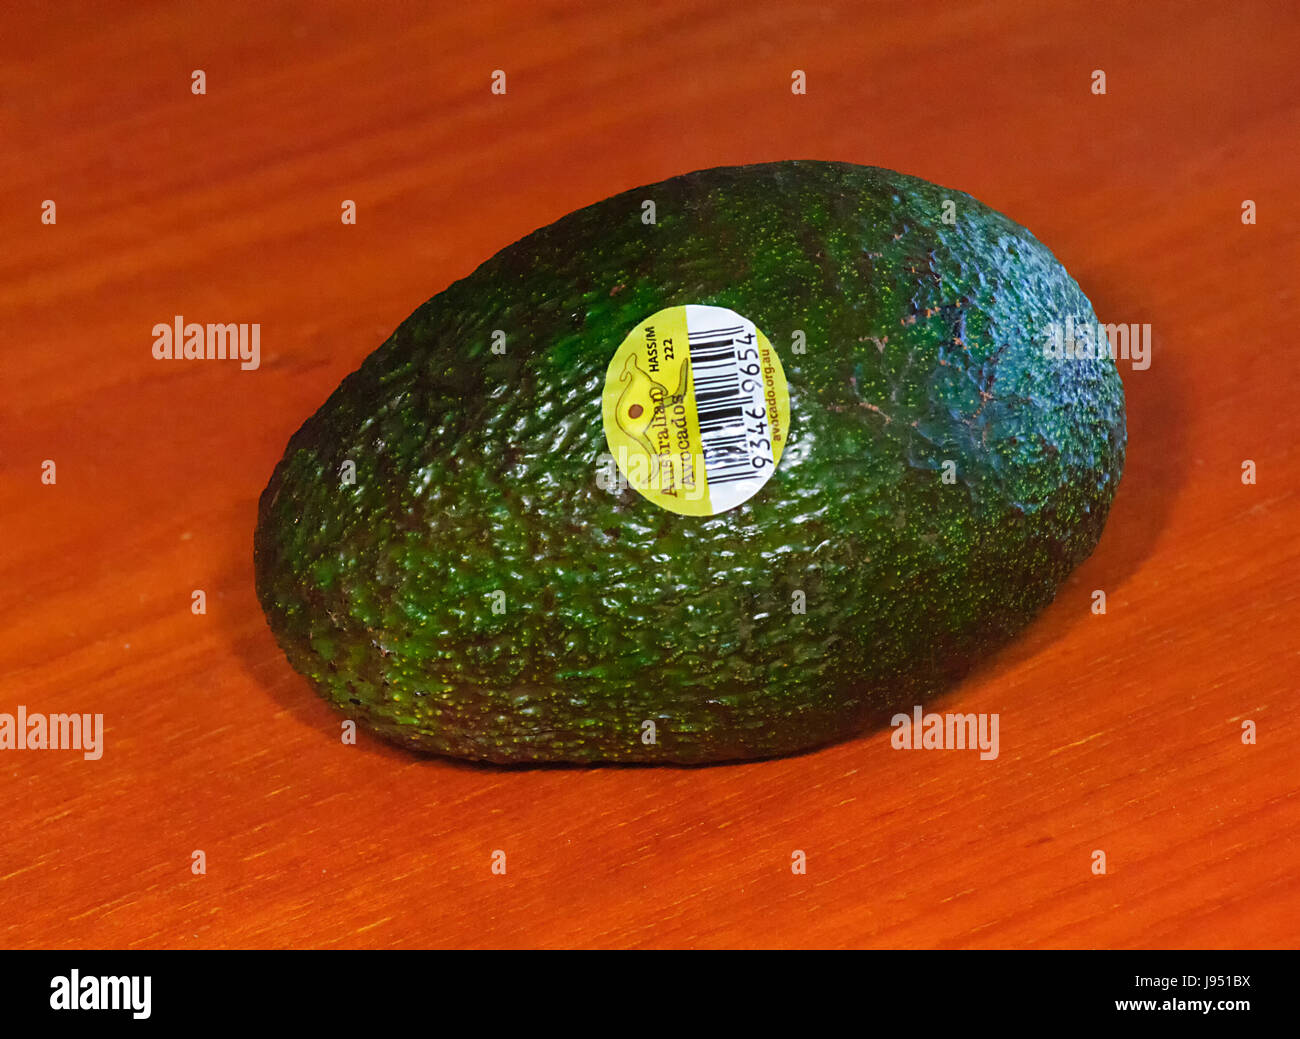 Il codice a barre e l'etichetta di un australiano cresciuto Pere di avocado, Australia Foto Stock